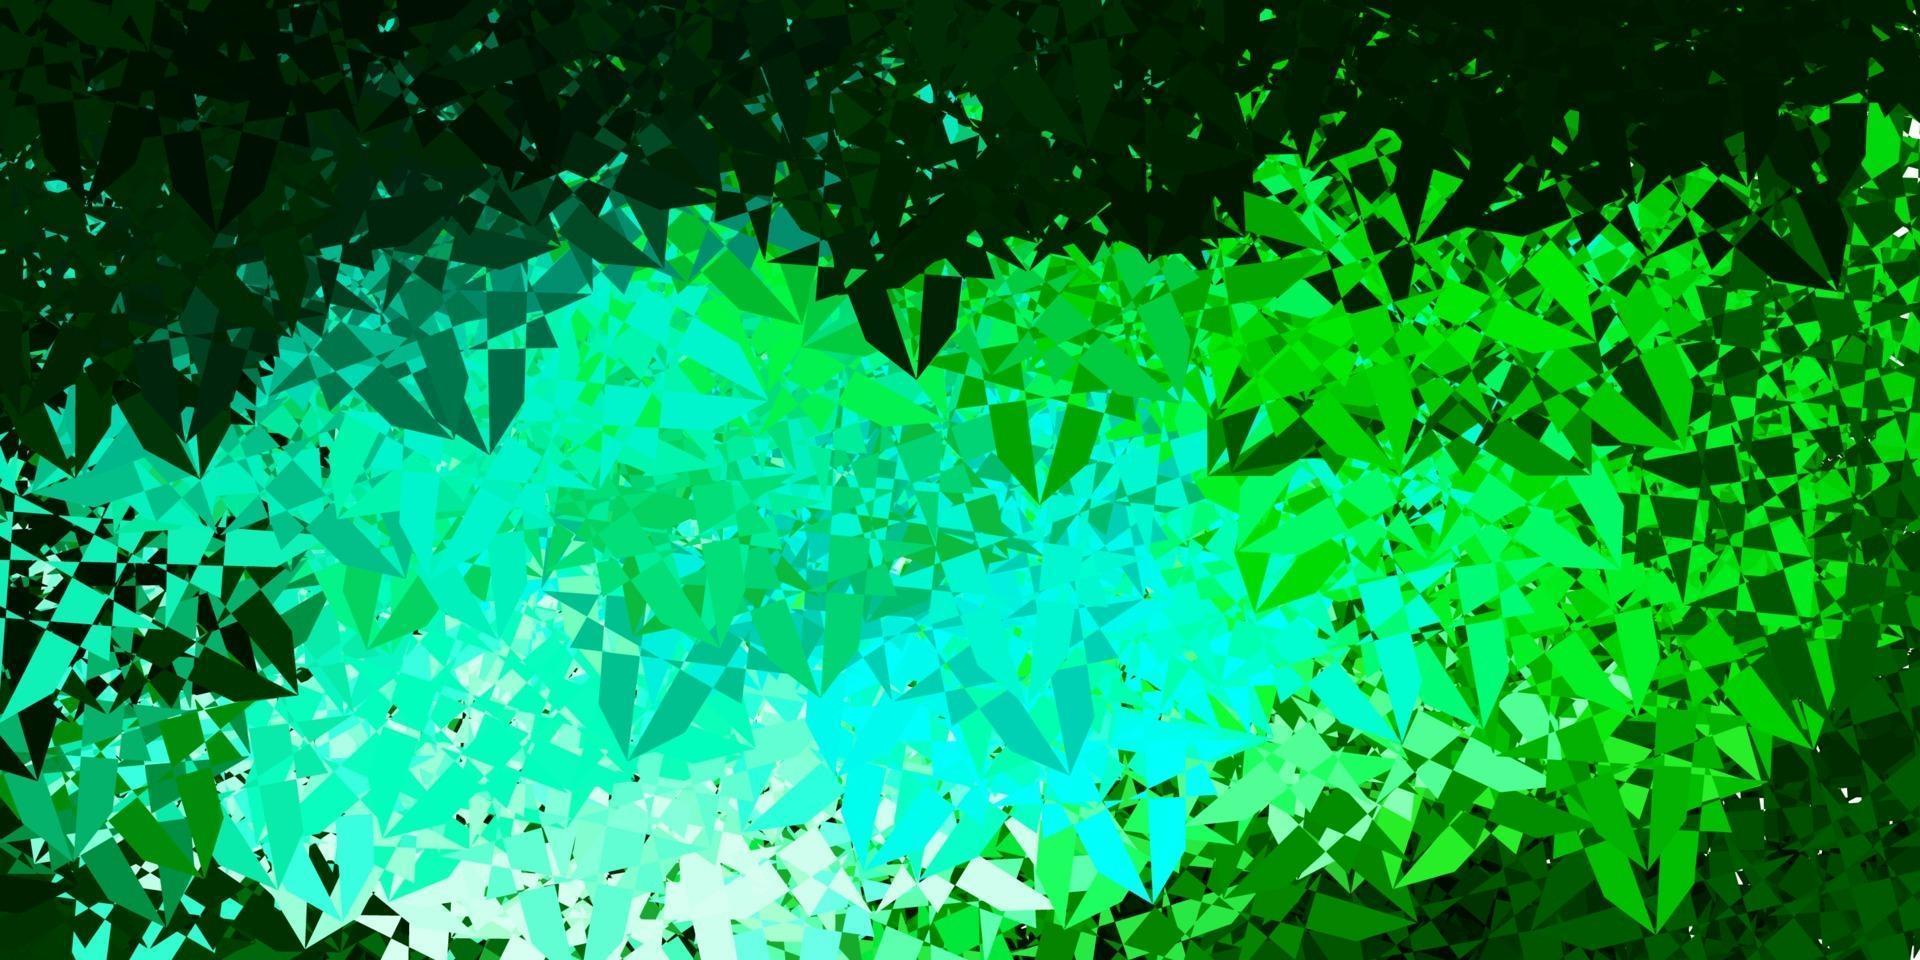 hellblaue, grüne Vektortextur mit zufälligen Dreiecken. vektor